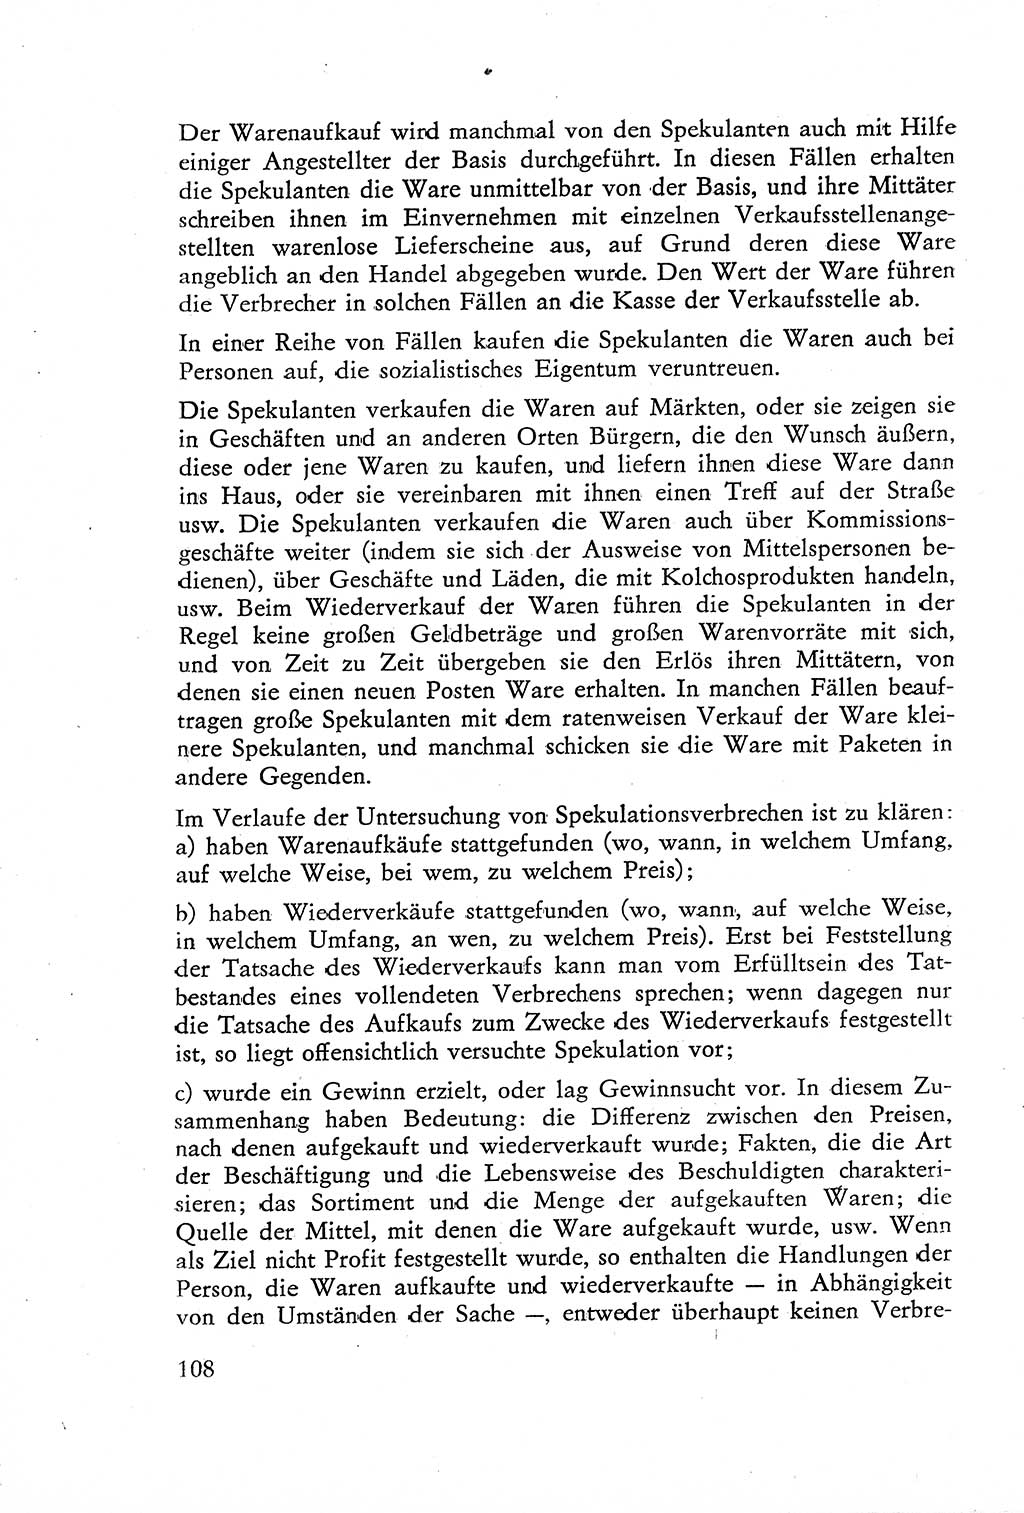 Die Untersuchung einzelner Verbrechensarten [Deutsche Demokratische Republik (DDR)] 1960, Seite 108 (Unters. Verbr.-Art. DDR 1960, S. 108)